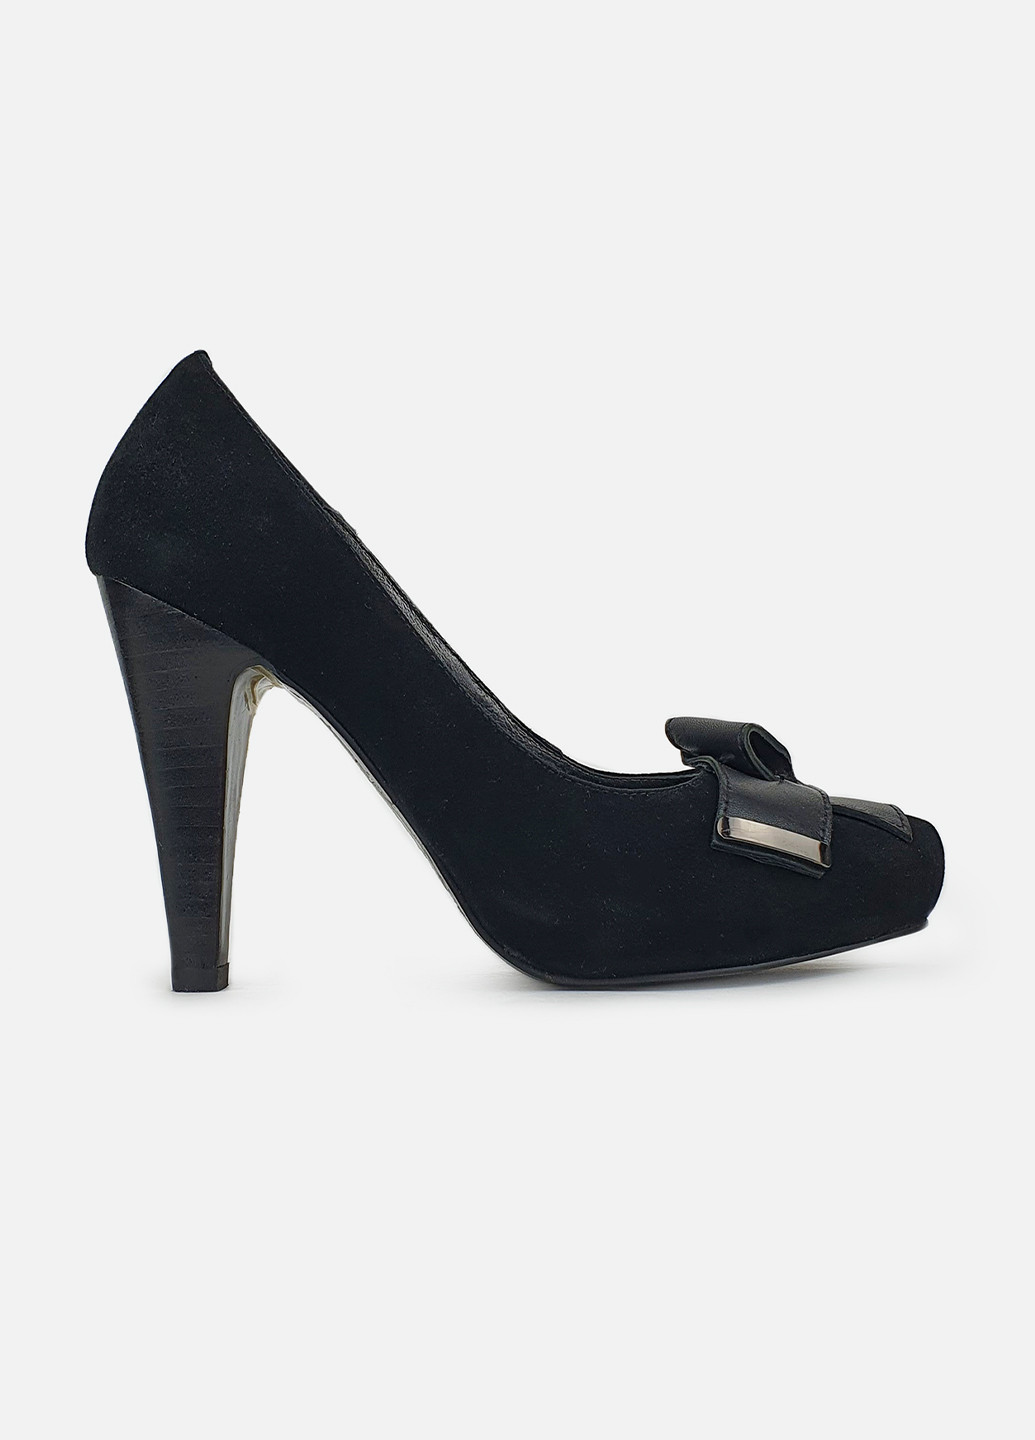 Черные замшевые туфли женские весенние осенние Brocoli